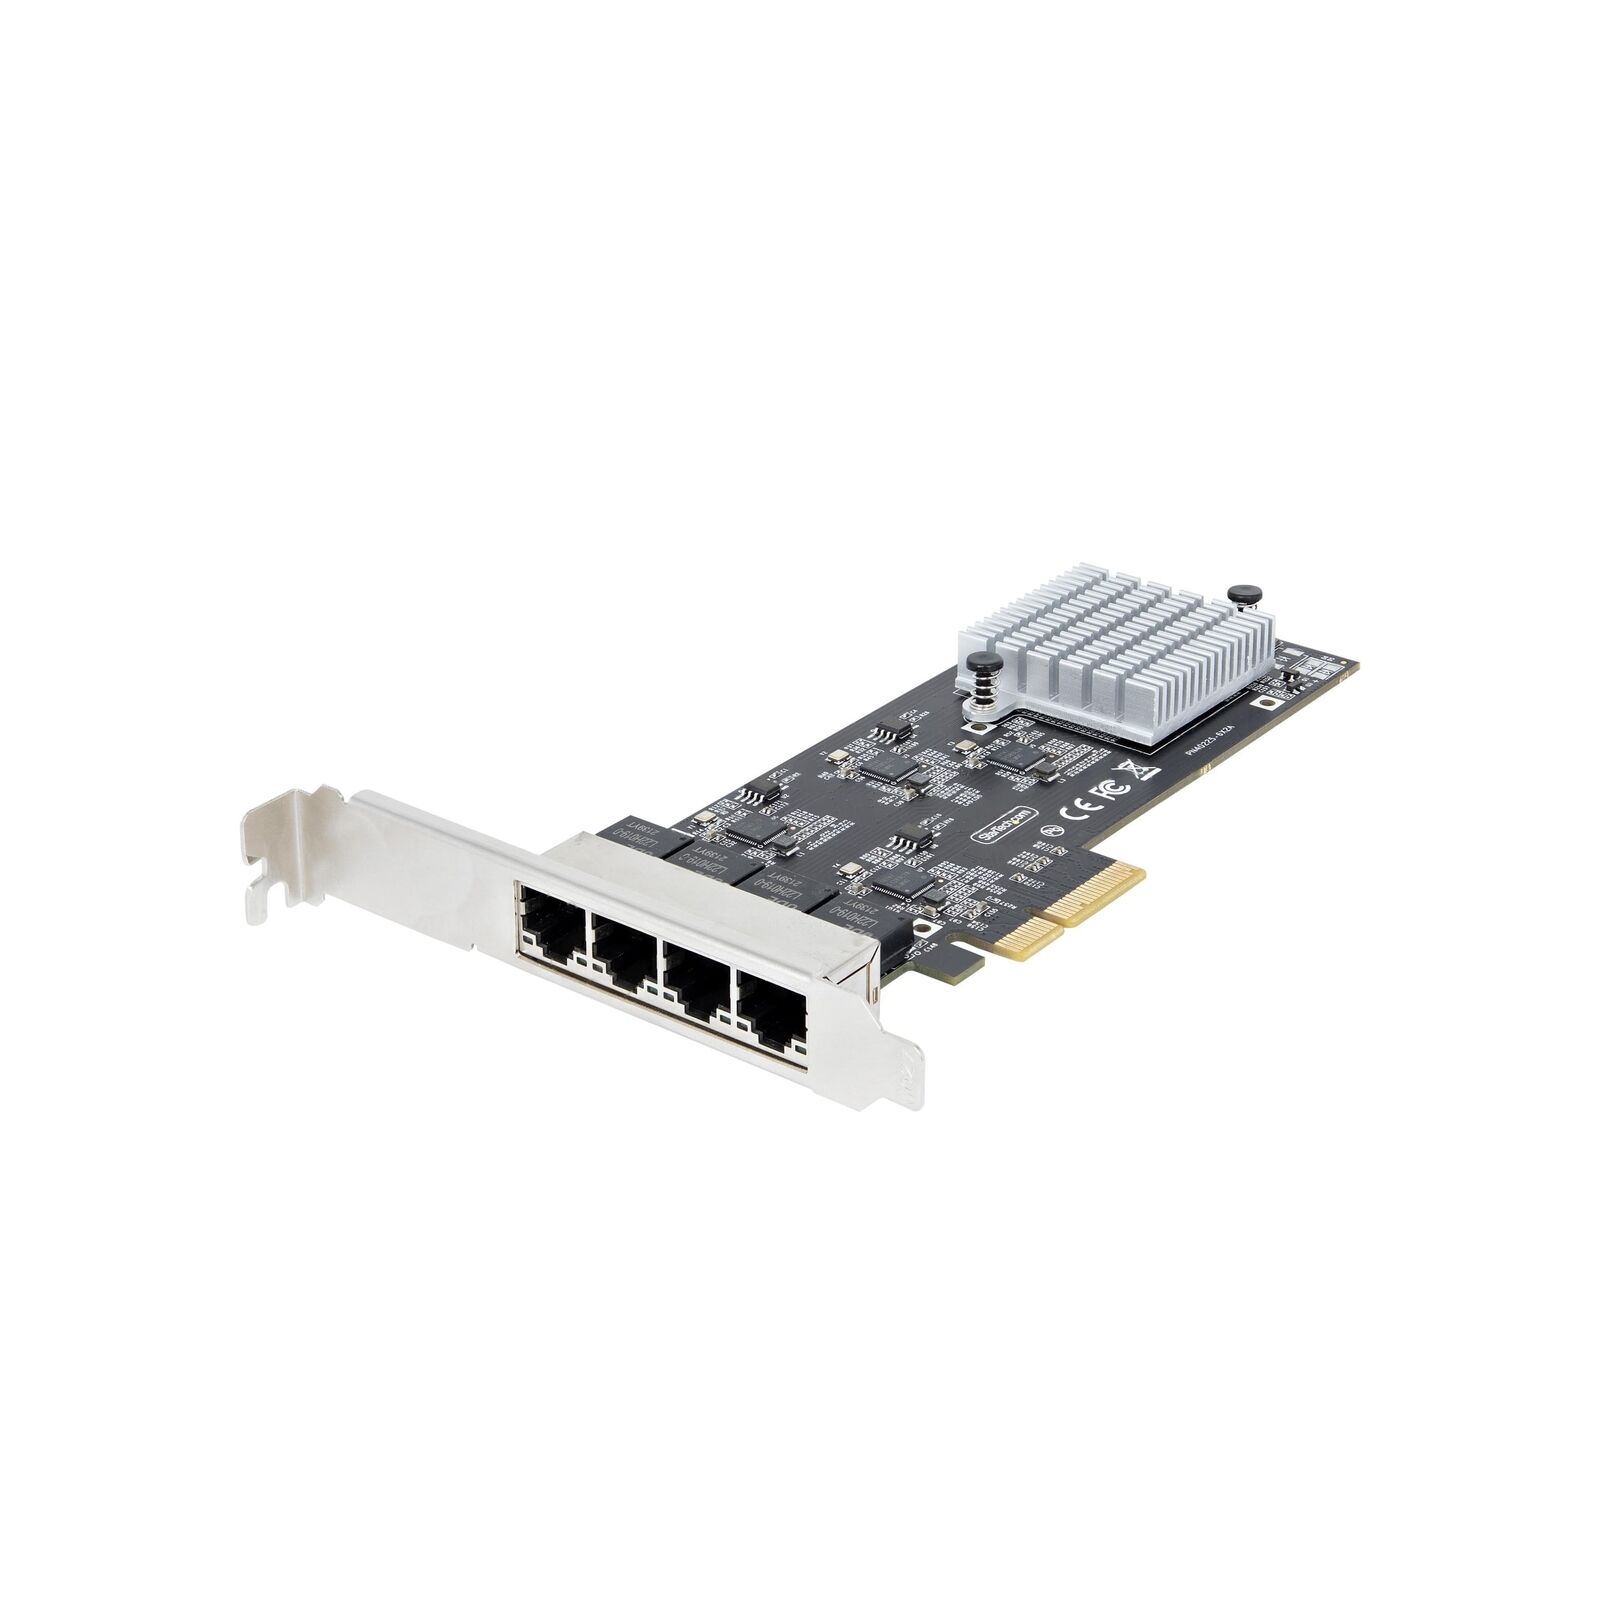 StarTech.com 4-Port 2.5Gbps NBASE-T PCIe Network Card, Intel I225-V, Quad-Por...